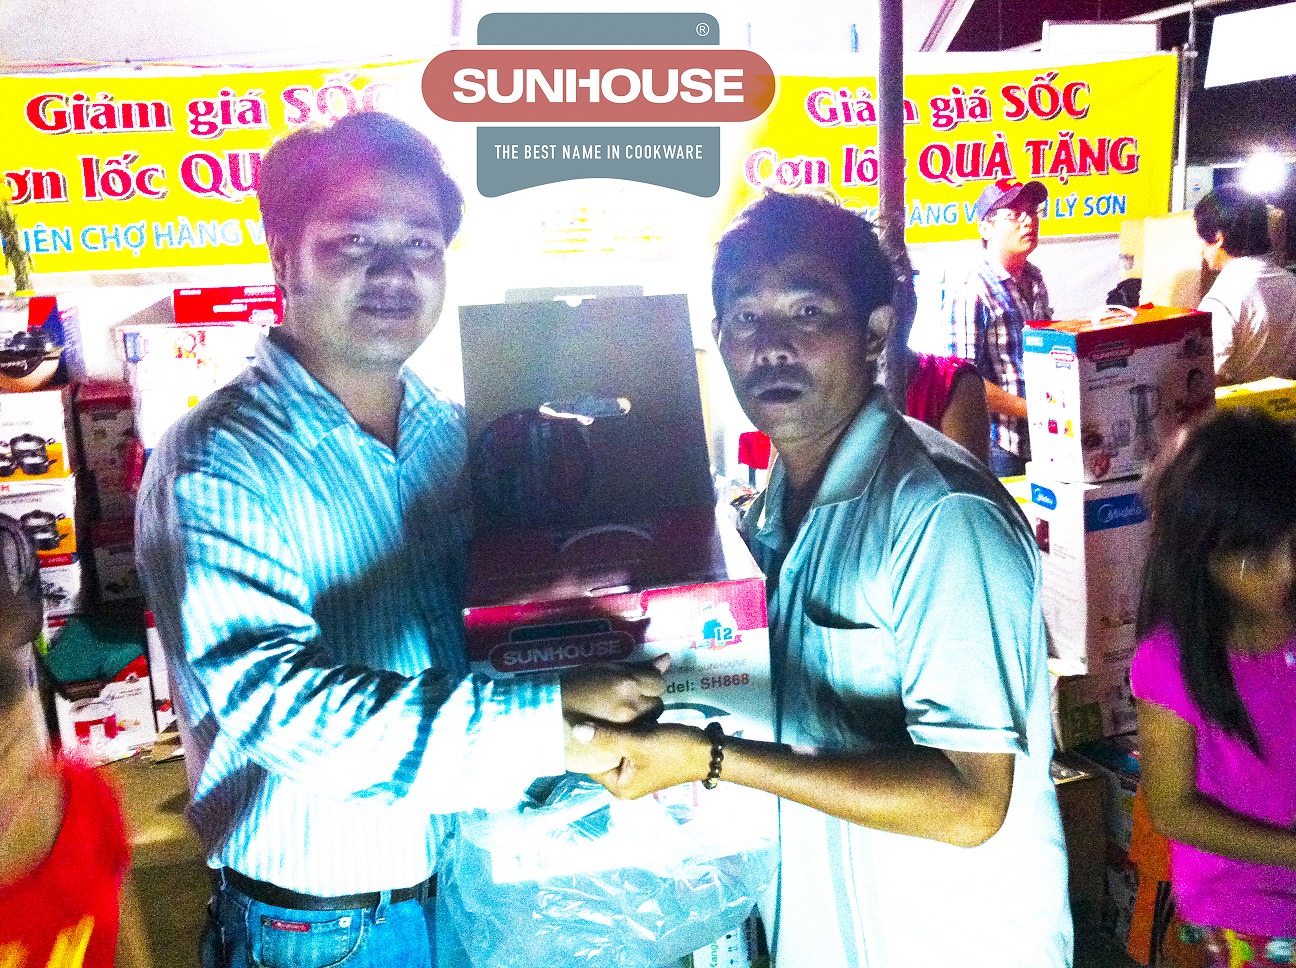 Ngư dân Lý Sơn trúng giải đặc biệt du lịch Hàn Quốc của thương hiệu Sunhouse